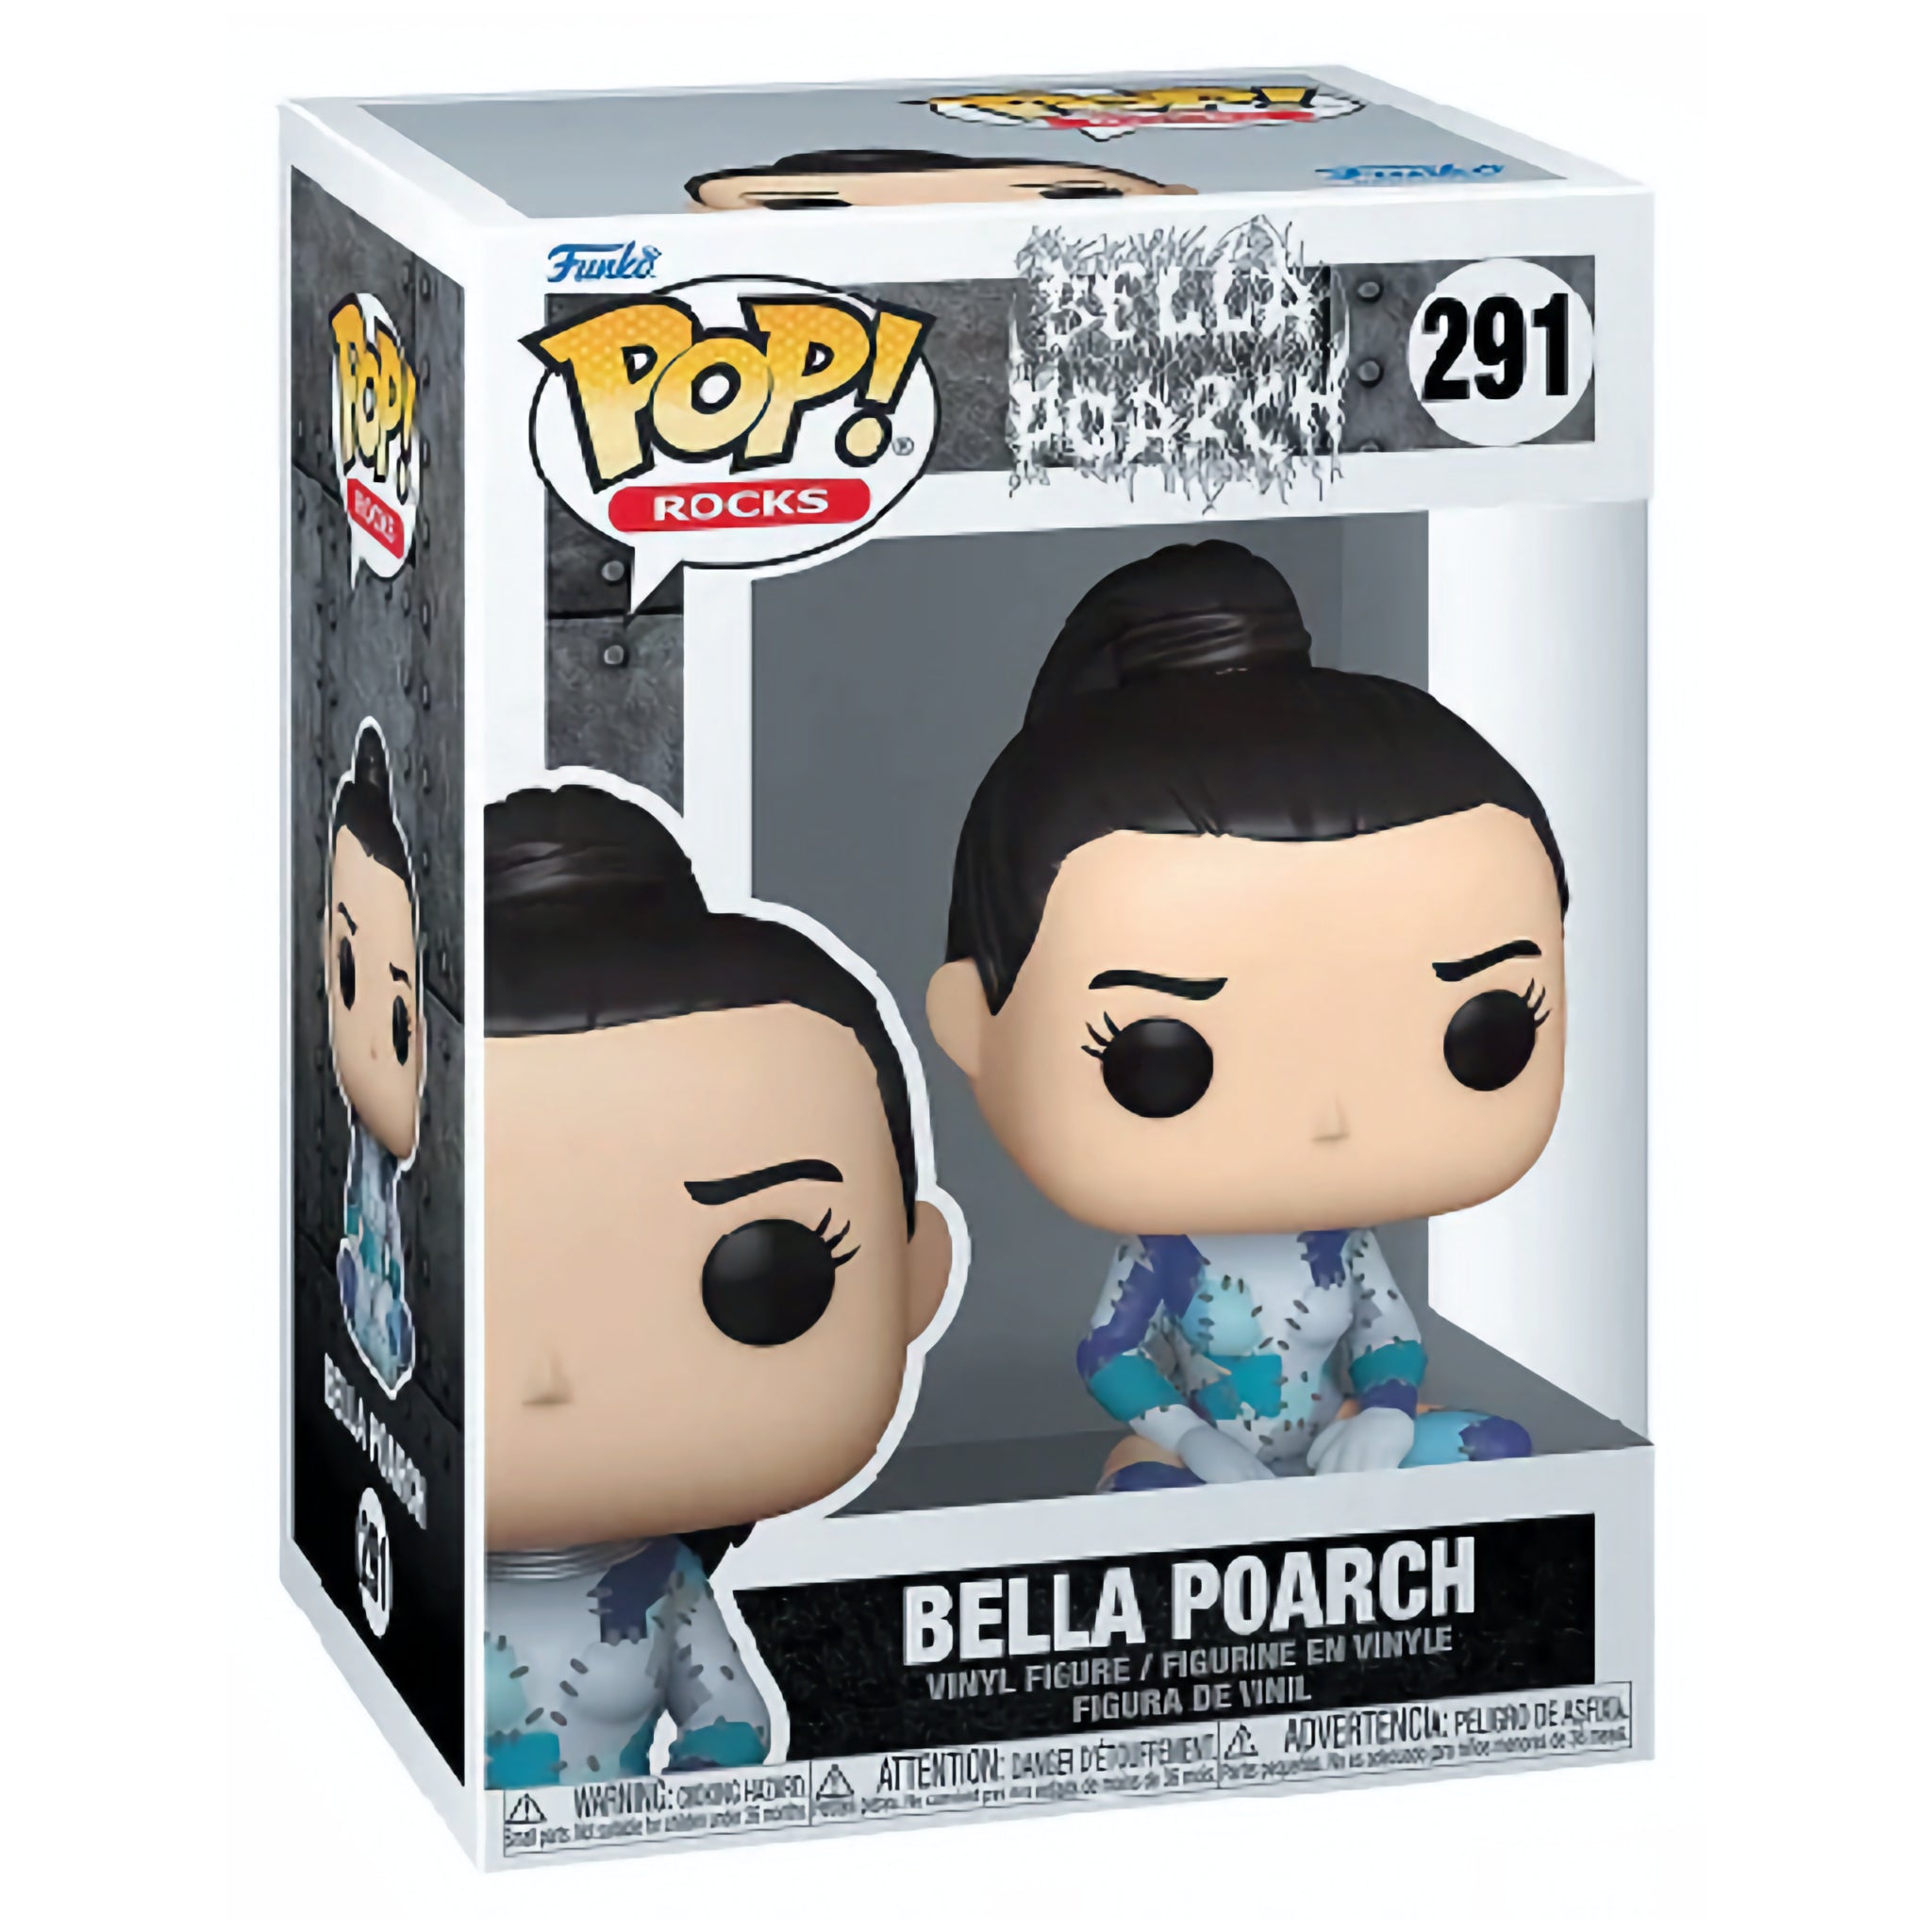 Bella Poarch Funko Pop!